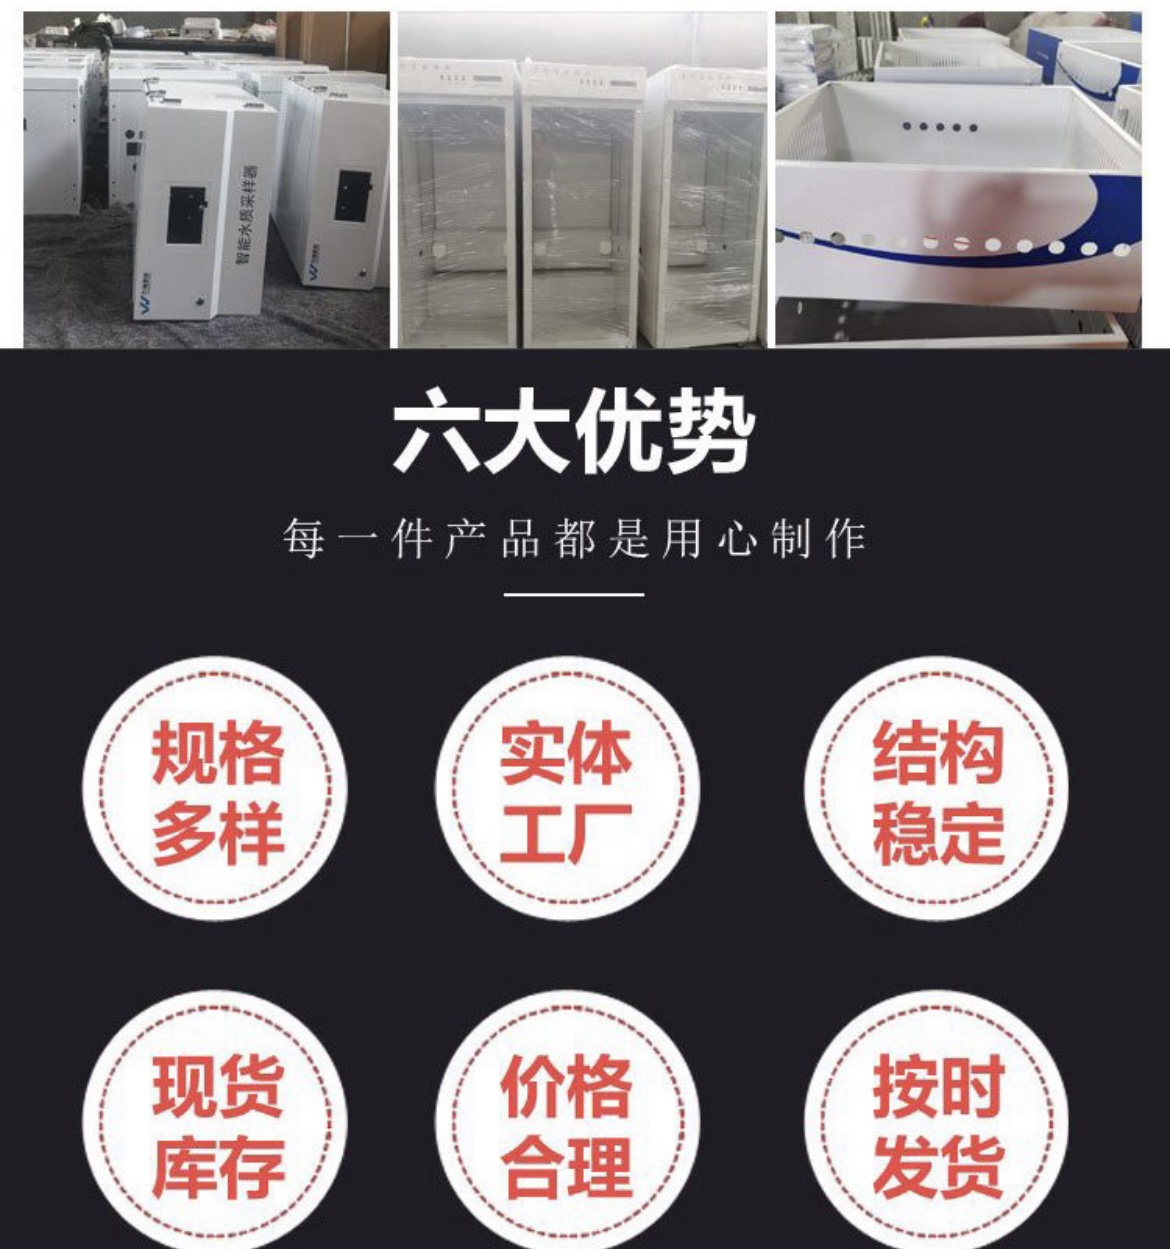 机柜钣金，深圳钣金机箱机柜，订制机柜，设备外壳，机柜机架